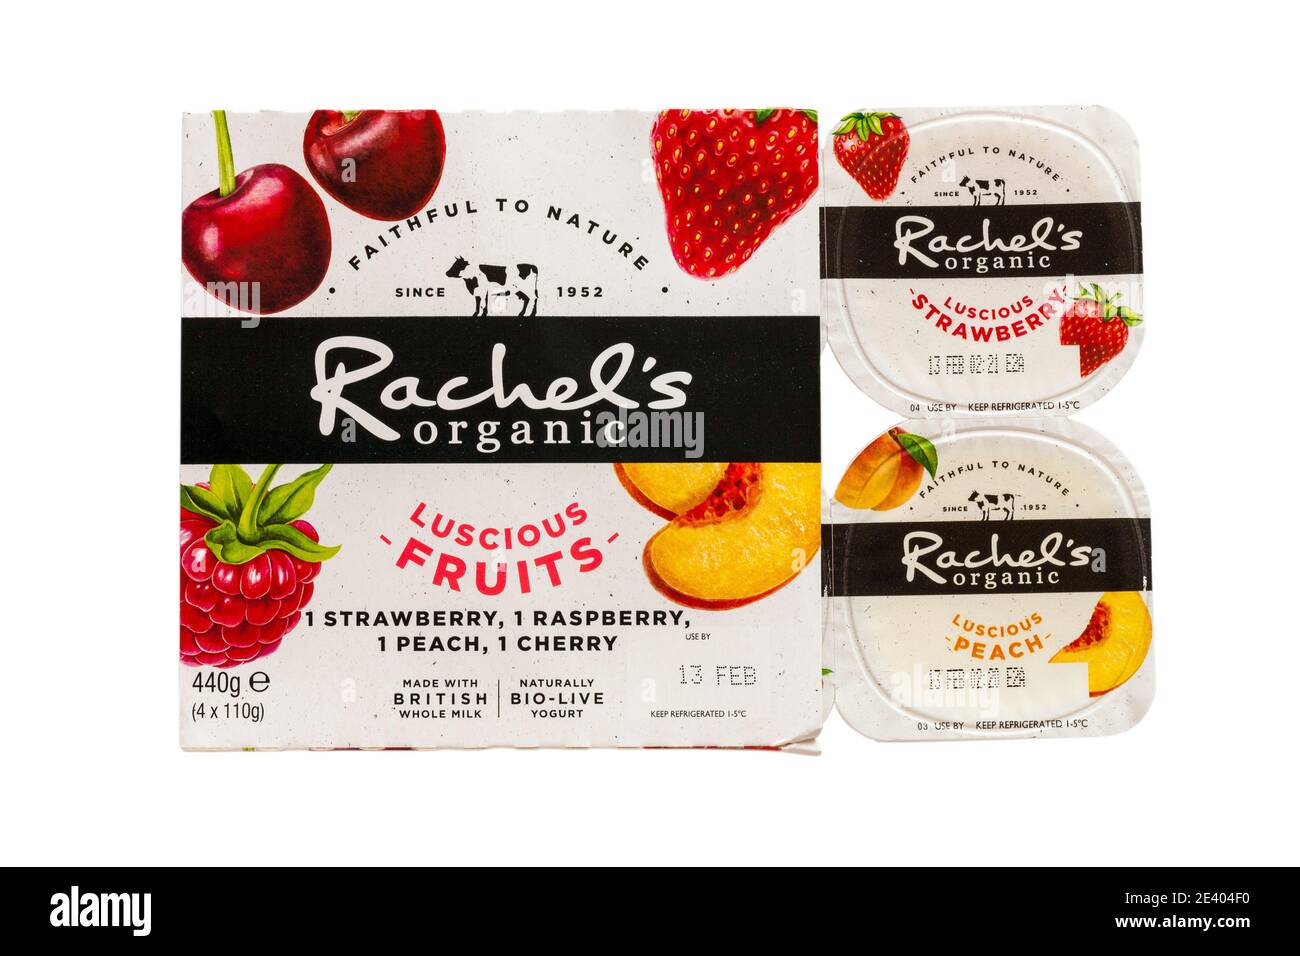 Confezione di frutti biologici e lussi di Rachel naturali bio-vivere yogurt fatto Con latte intero britannico isolato su sfondo bianco Foto Stock